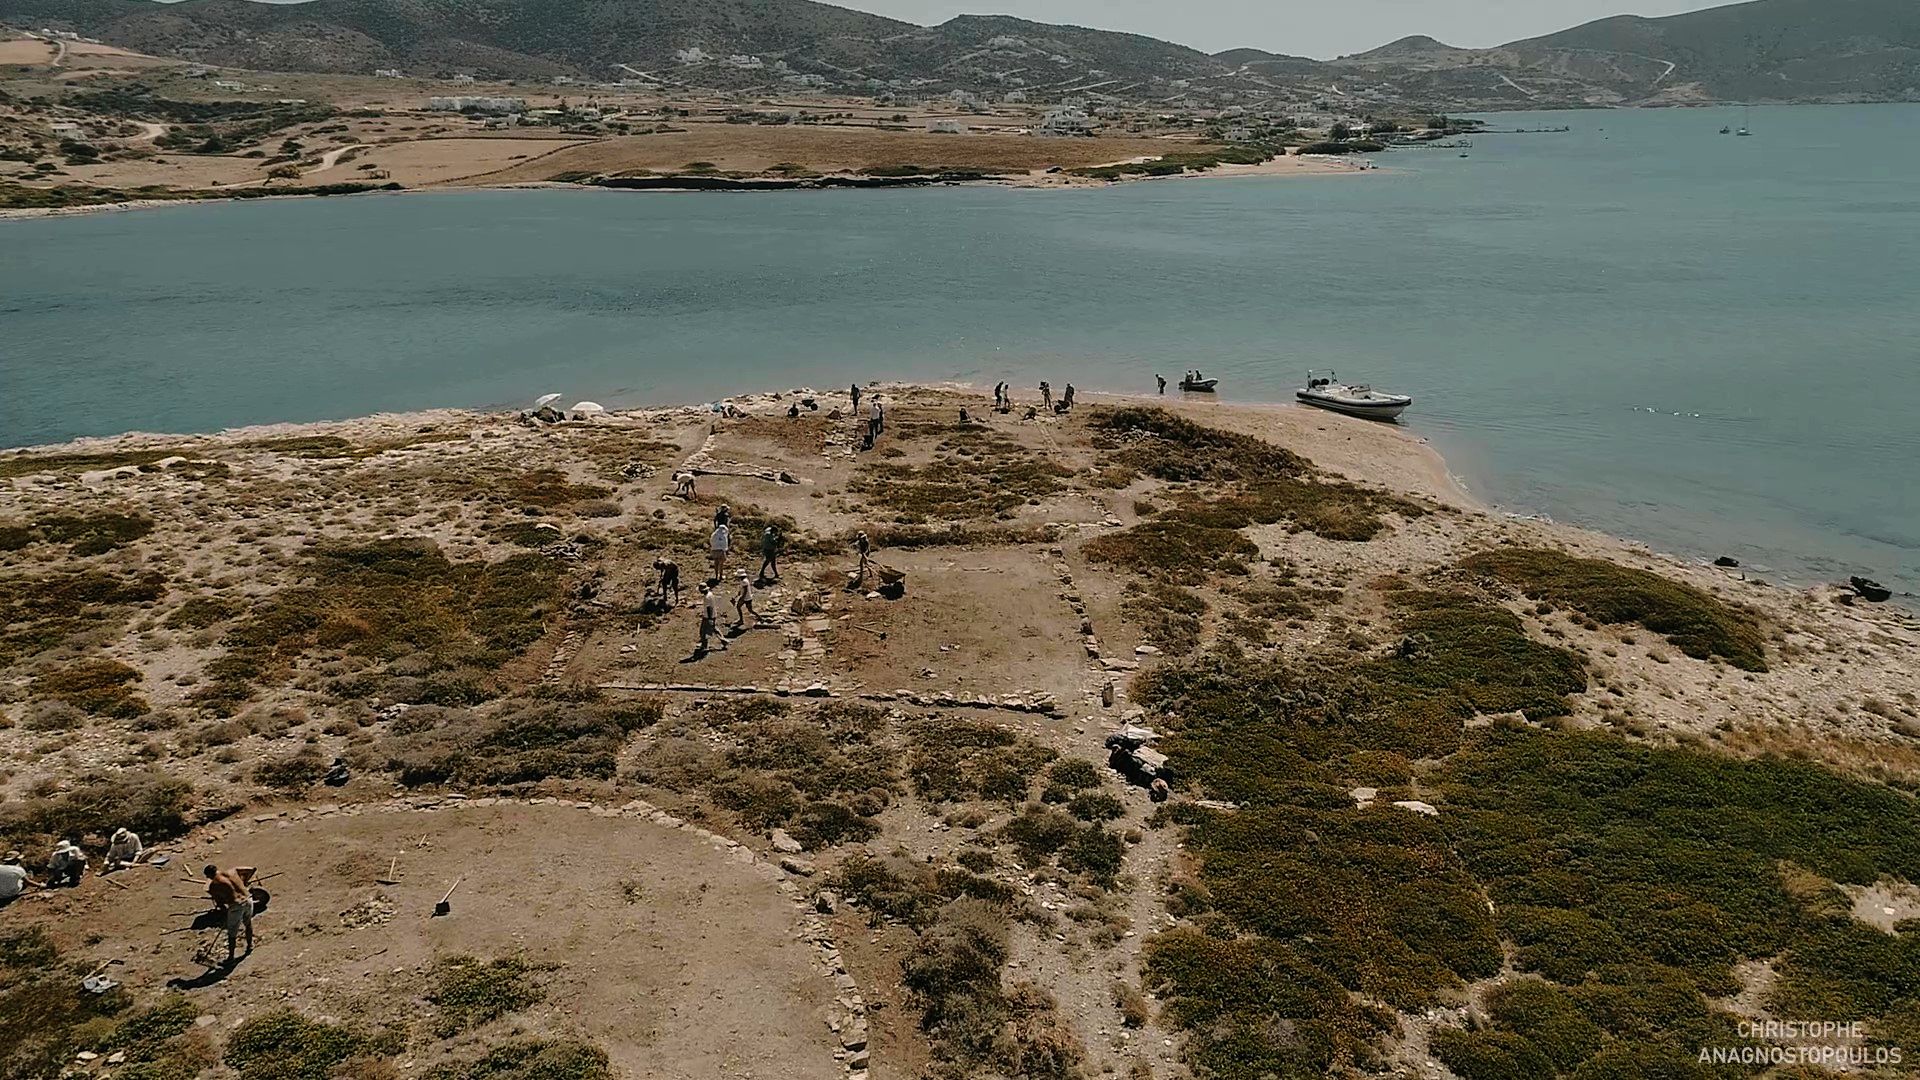 Δεσποτικό, το νησί που ερήμωσαν οι Αθηναίοι επειδή οι κάτοικοι της Πάρου  ανέγειραν μεγάλο ναό του Απόλλωνα που ανταγωνιζόταν την Δήλο. Σπουδαία  ευρήματα (φωτο και drone) - ΜΗΧΑΝΗ ΤΟΥ ΧΡΟΝΟΥ